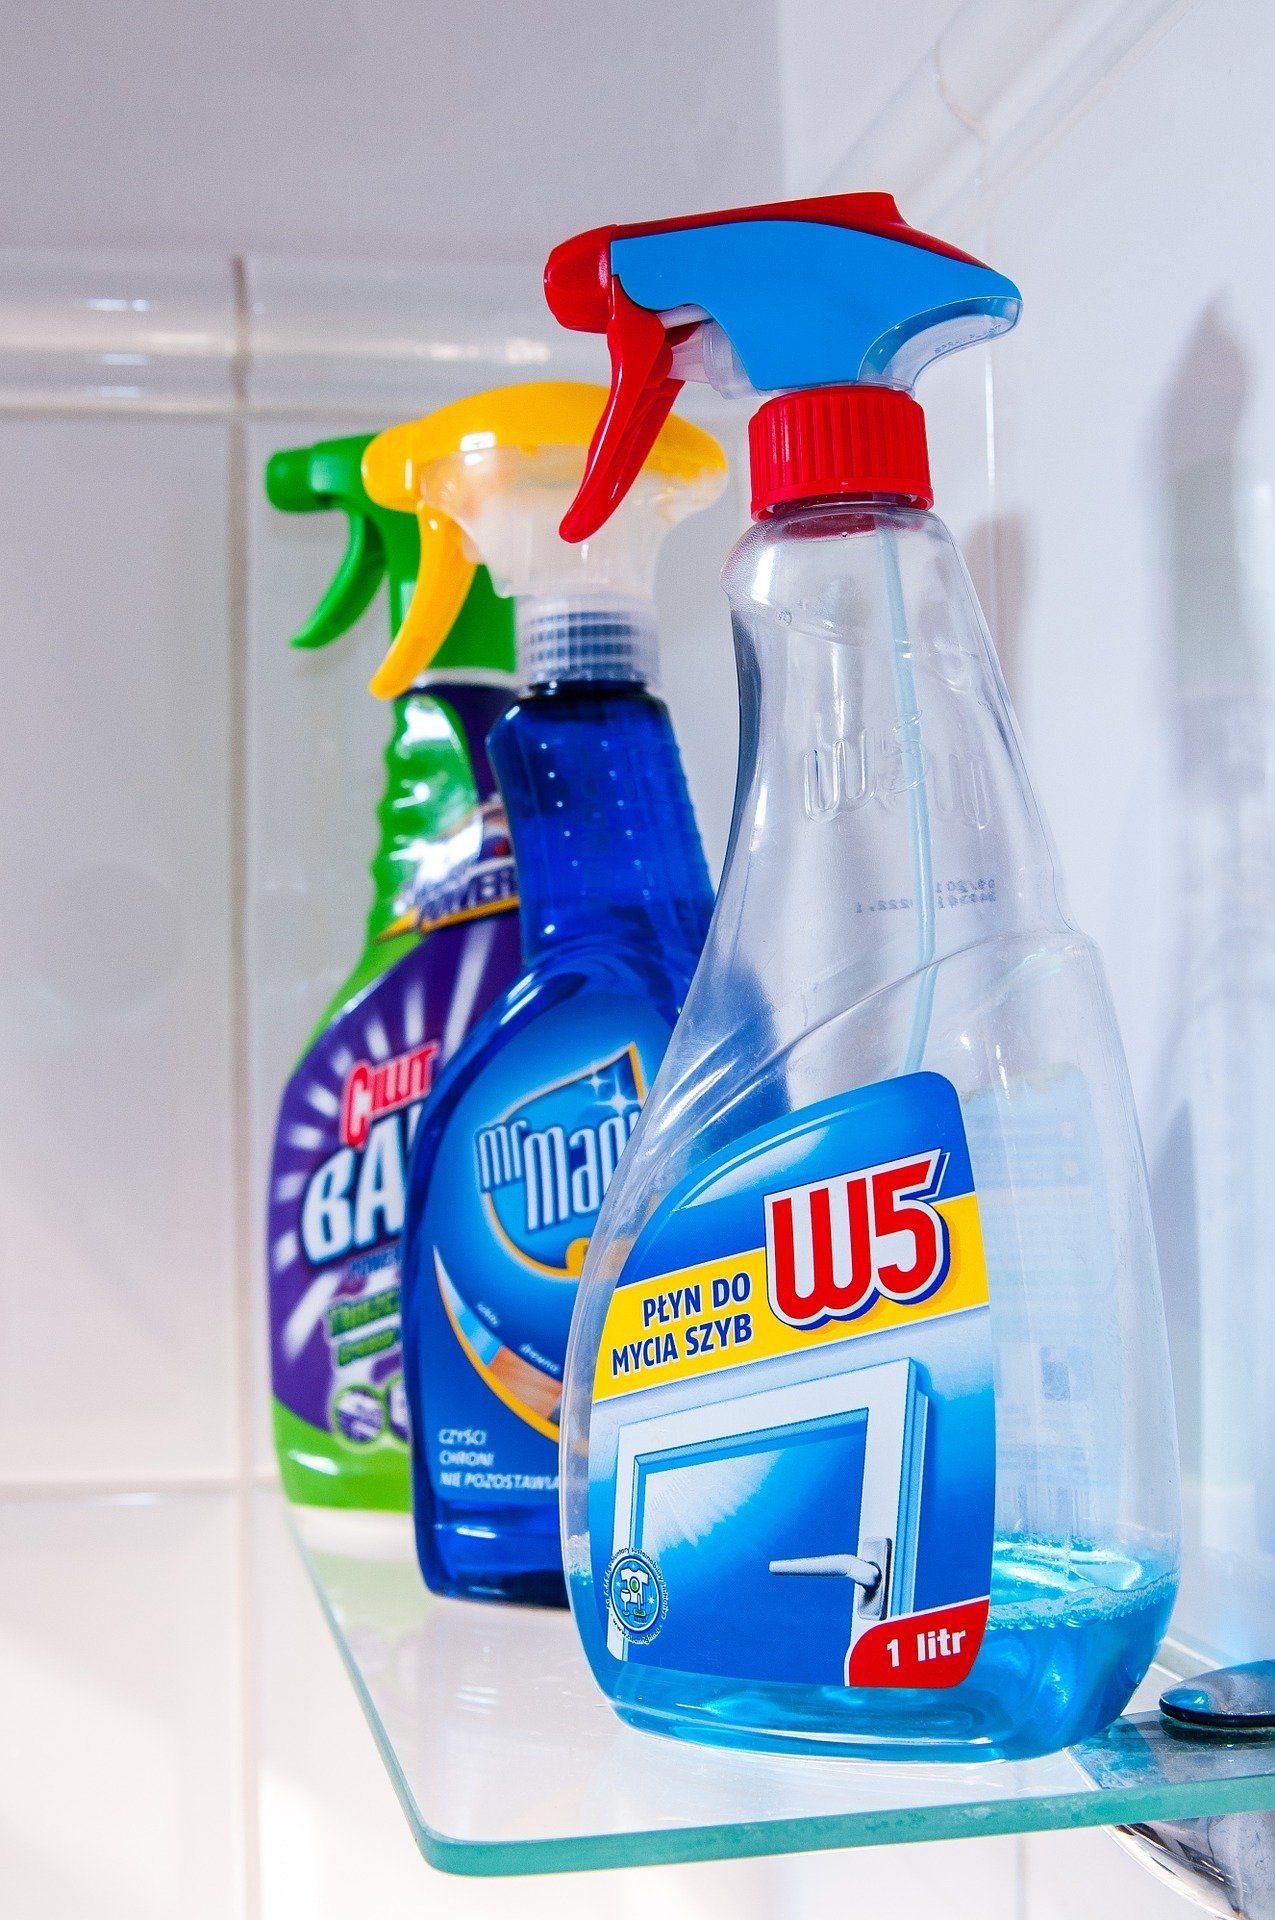 Diversos productos de limpieza. Fuente: Pixabay